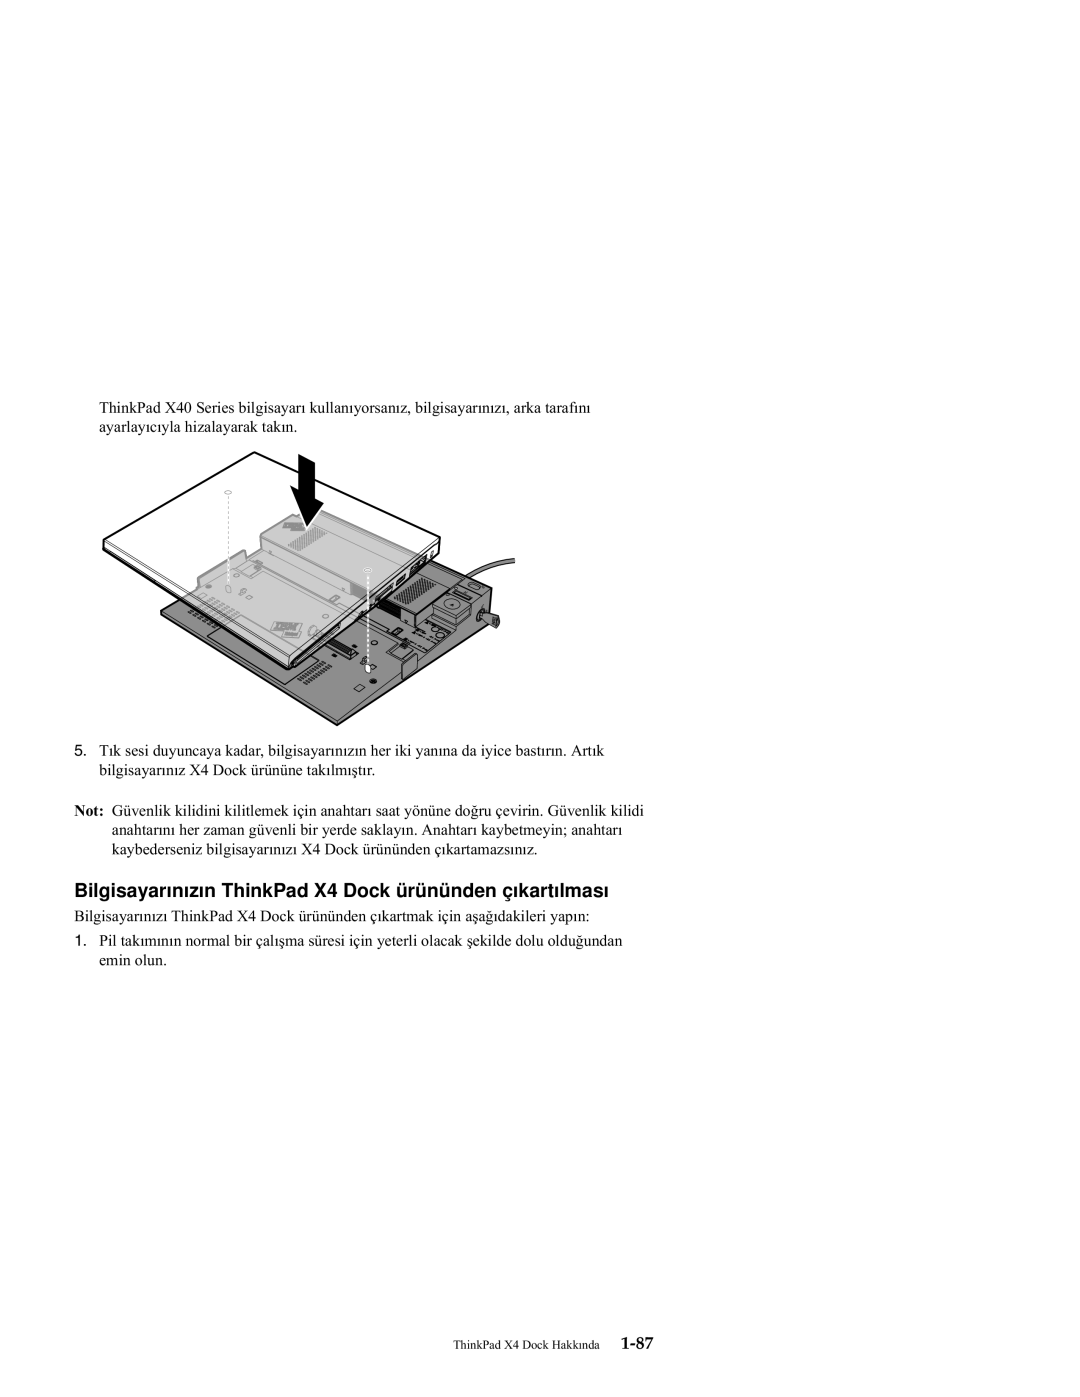 IBM manual Bilgisayarınızın ThinkPad X4 Dock ürününden çıkartılması 